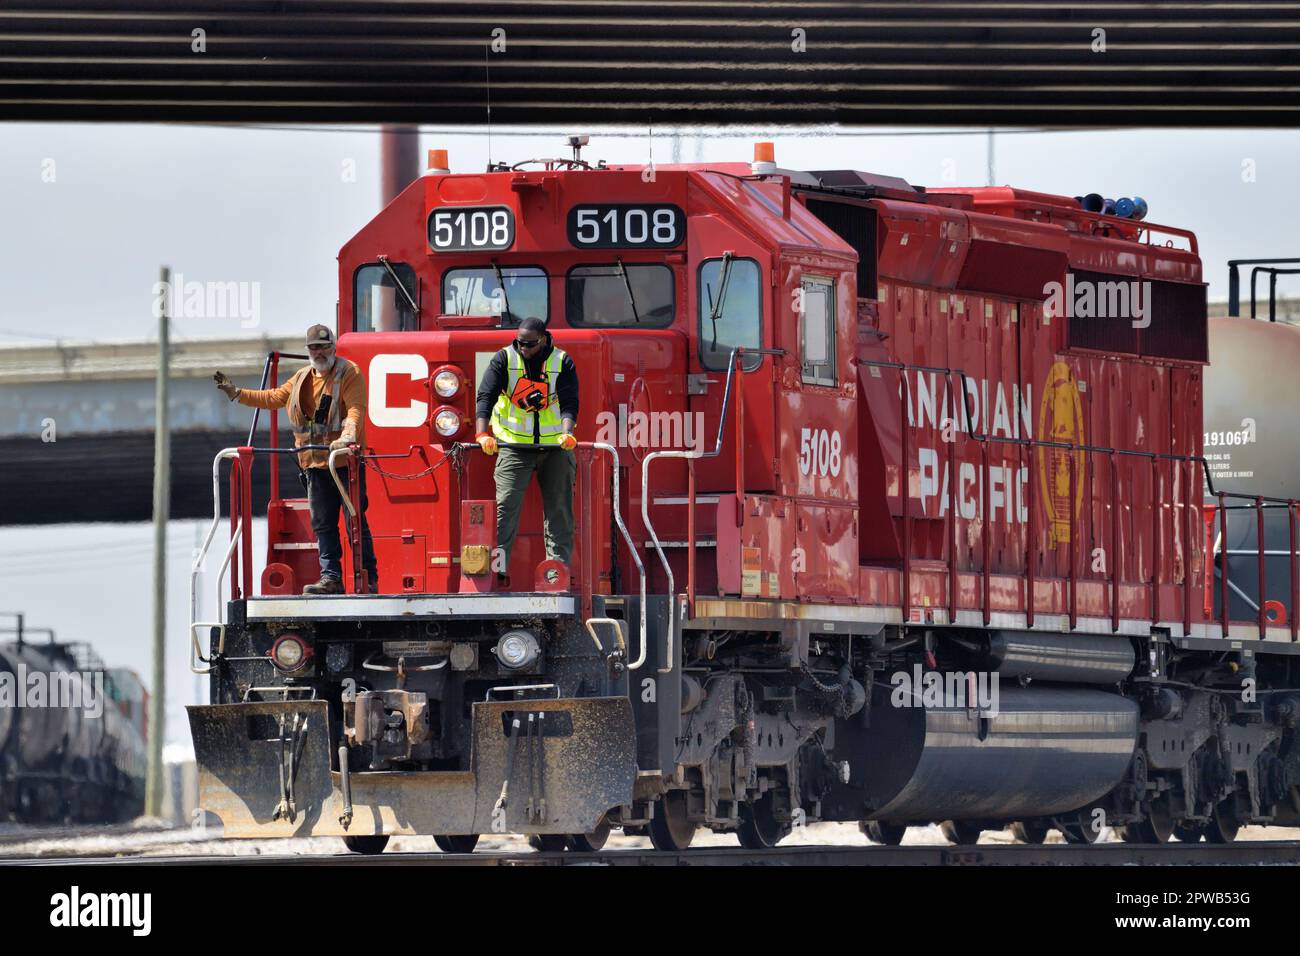 Franklin Park, Illinois, USA. Mit zwei Besatzungsmitgliedern, die auf dem vorderen Bahnsteig einer Lokomotive sitzen, wechselt ein Güterzug die Autos am Rande eines Gartens. Stockfoto